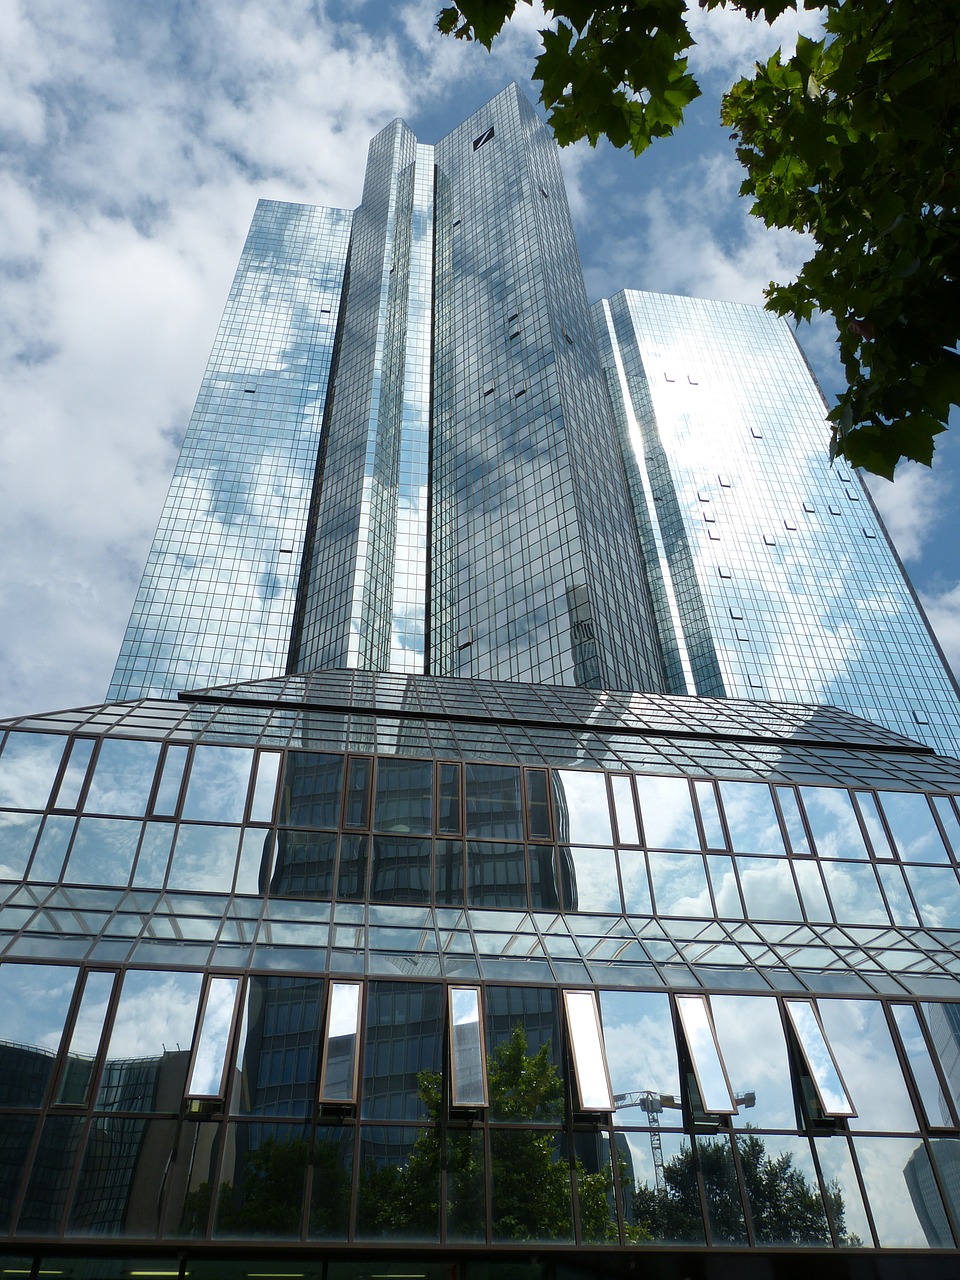 Dangoraižis, Frankfurtas, Pagrindinis, Panorama, Architektūra, Pastatas, Vokietija, Dangoraižiai, Stiklas, Langas